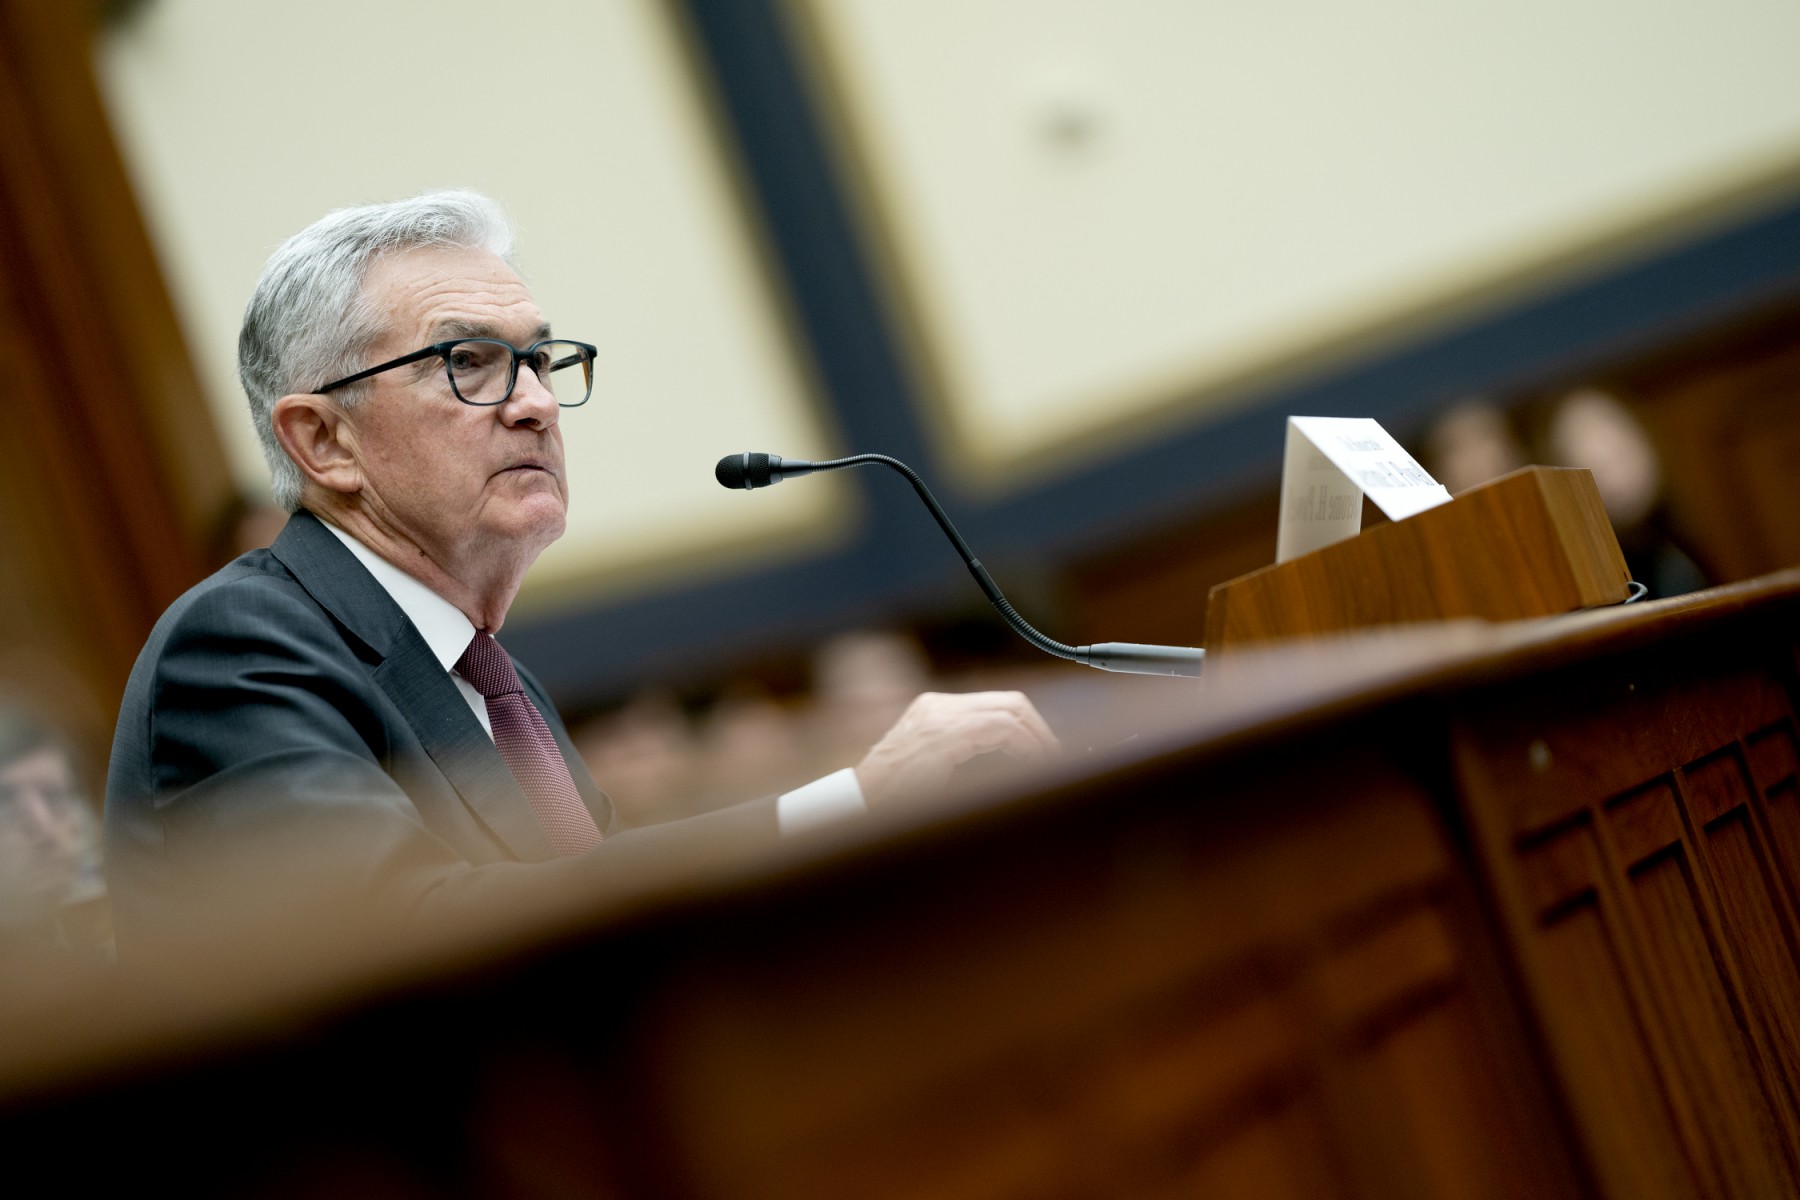 El sector bancario requerirá mayor supervisión tras la quiebra: Powell